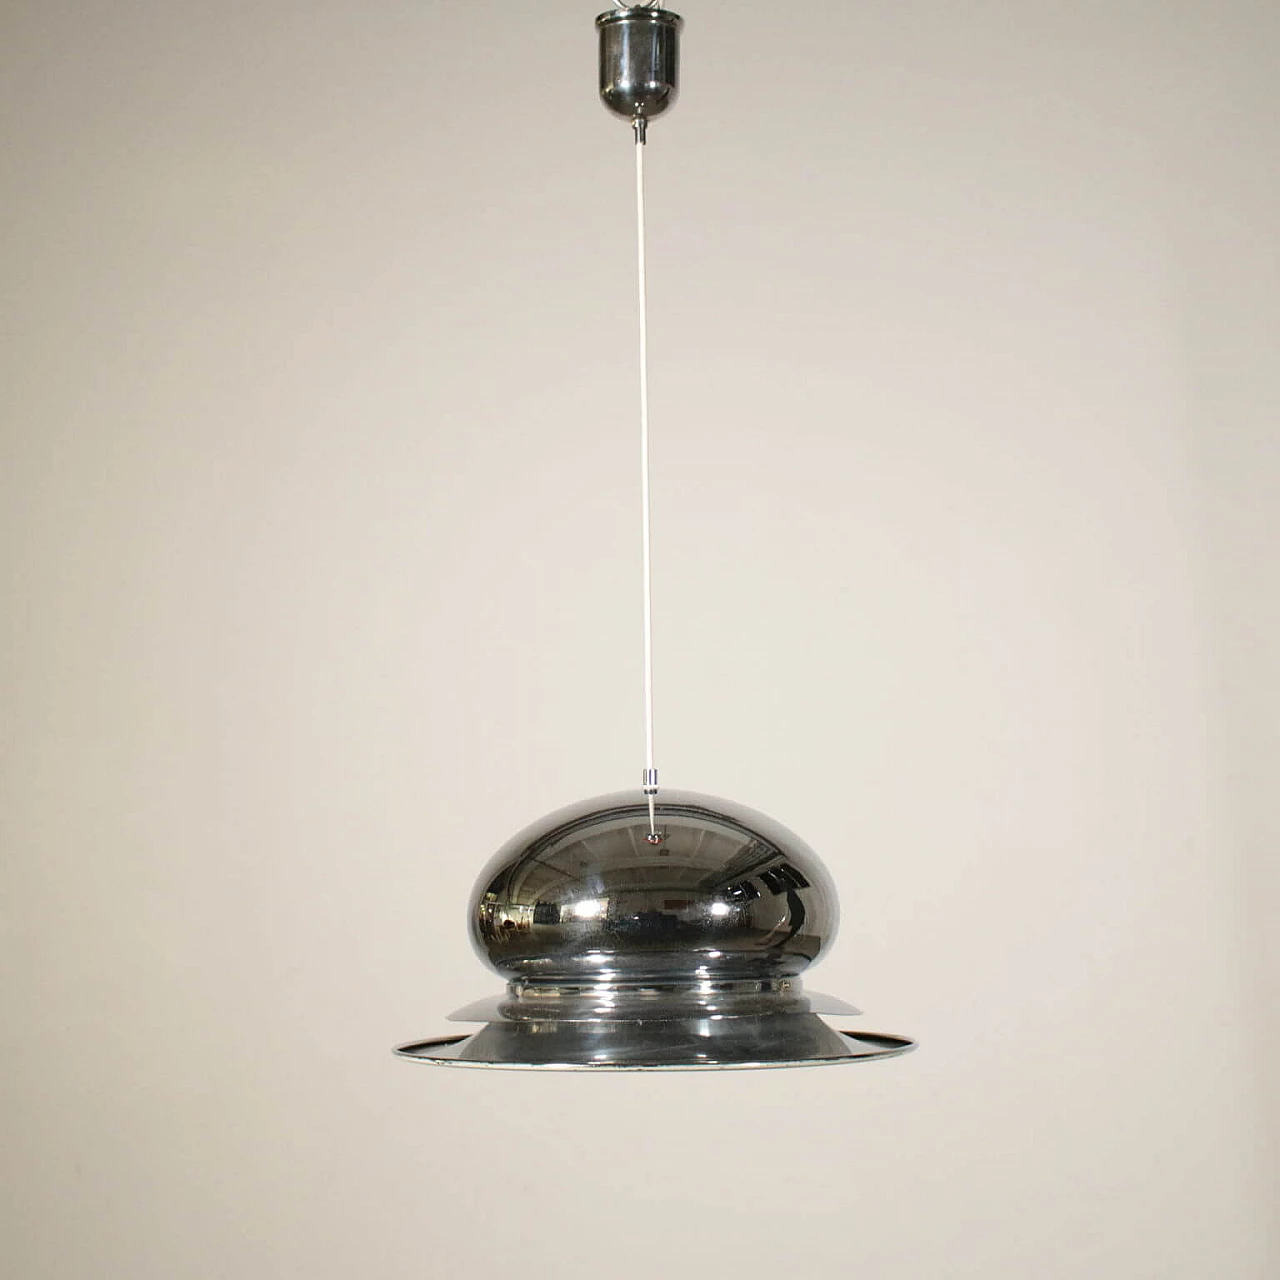 Chromed metal chandelier, 70s 1198697